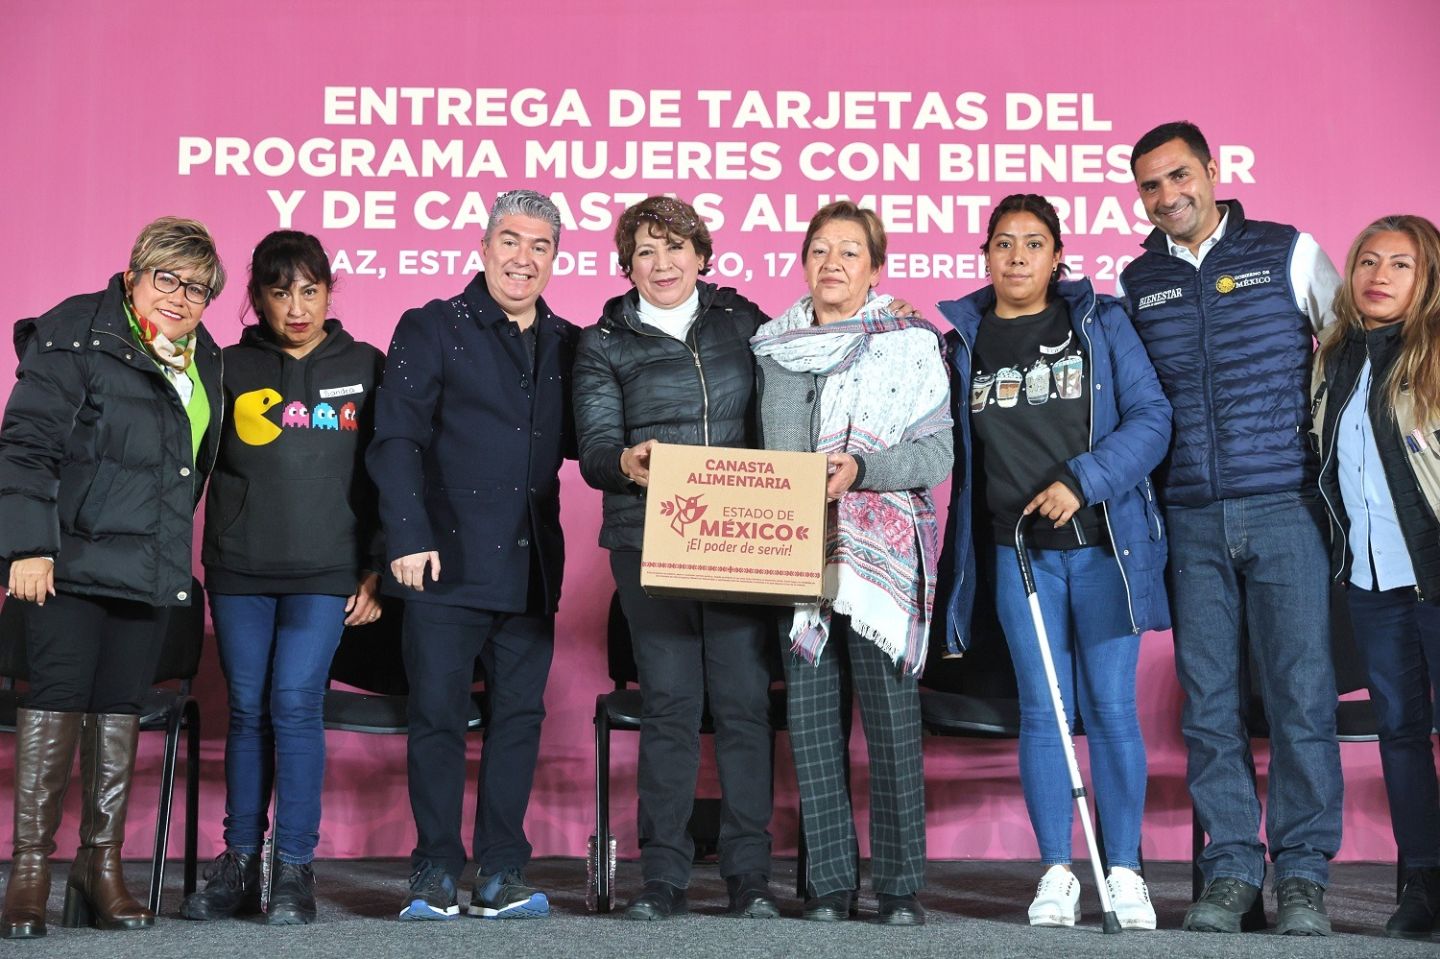 Entregan 5 mil tarjetas de ’mujeres con bienestar’ en La Paz